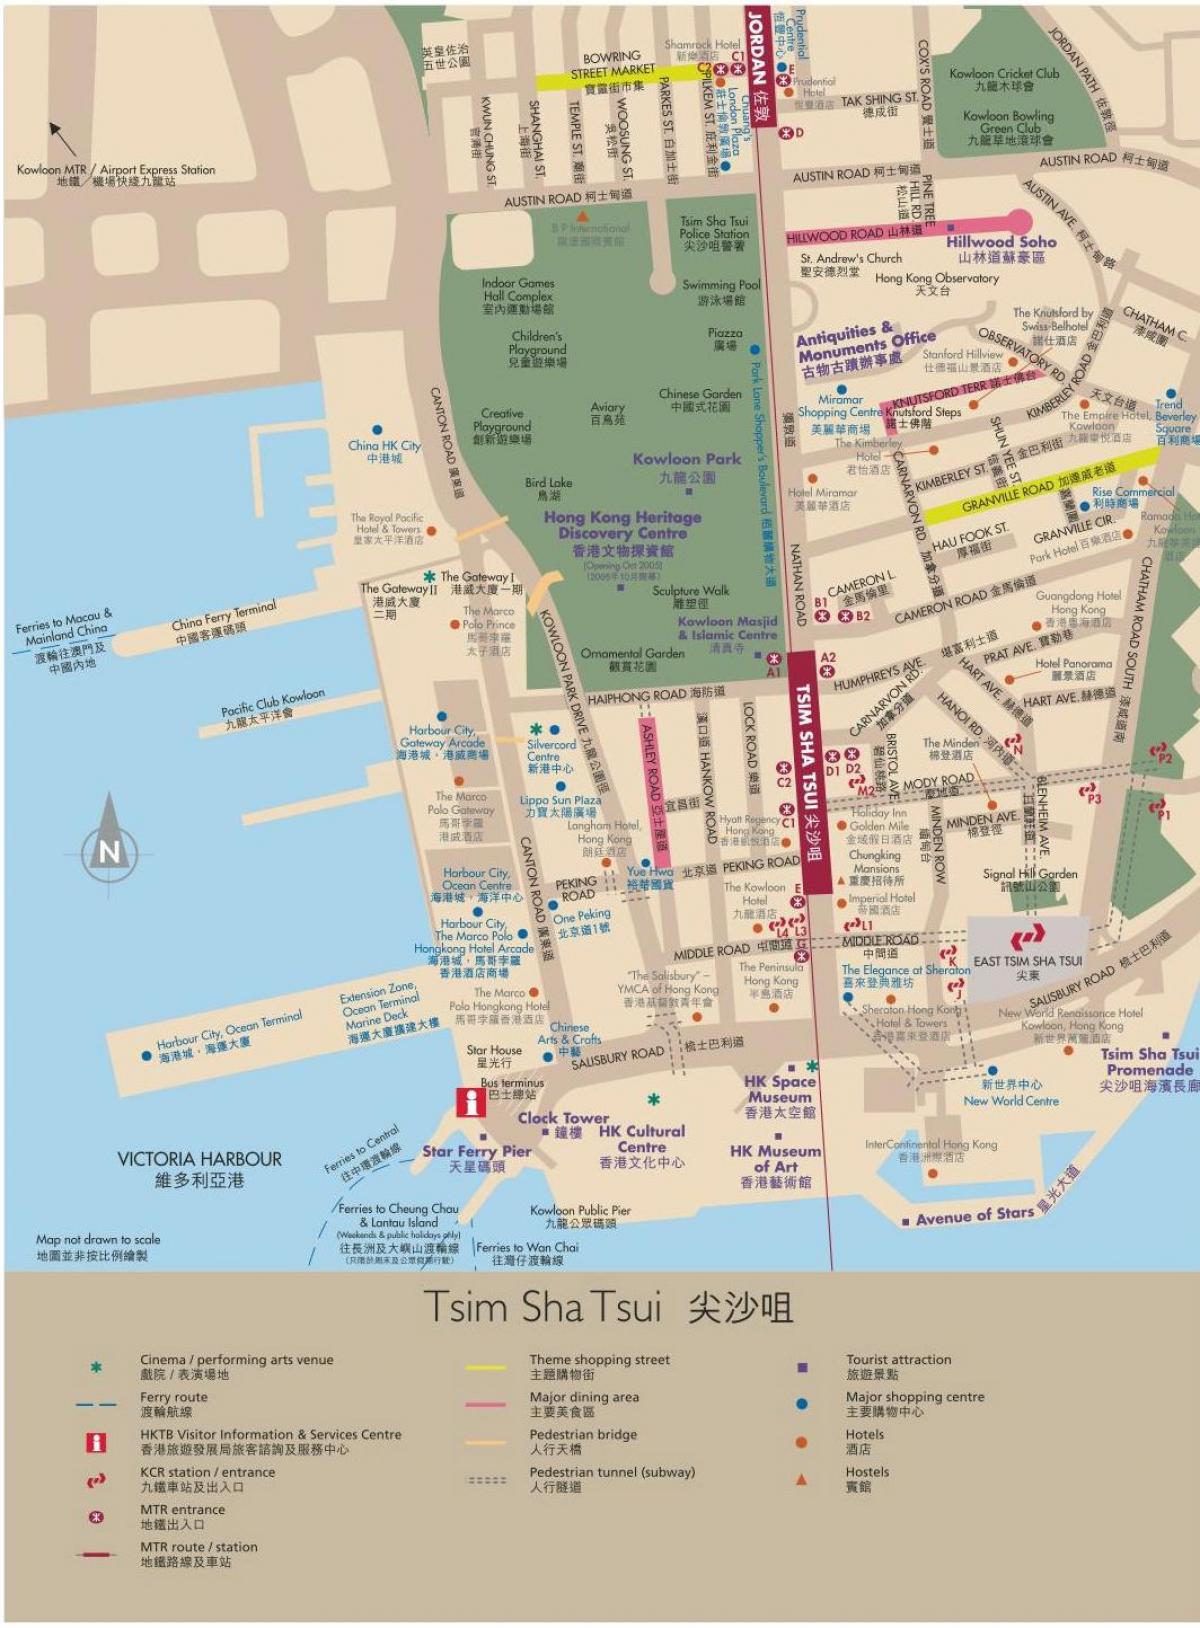 Hong Kong Kowloon kartta